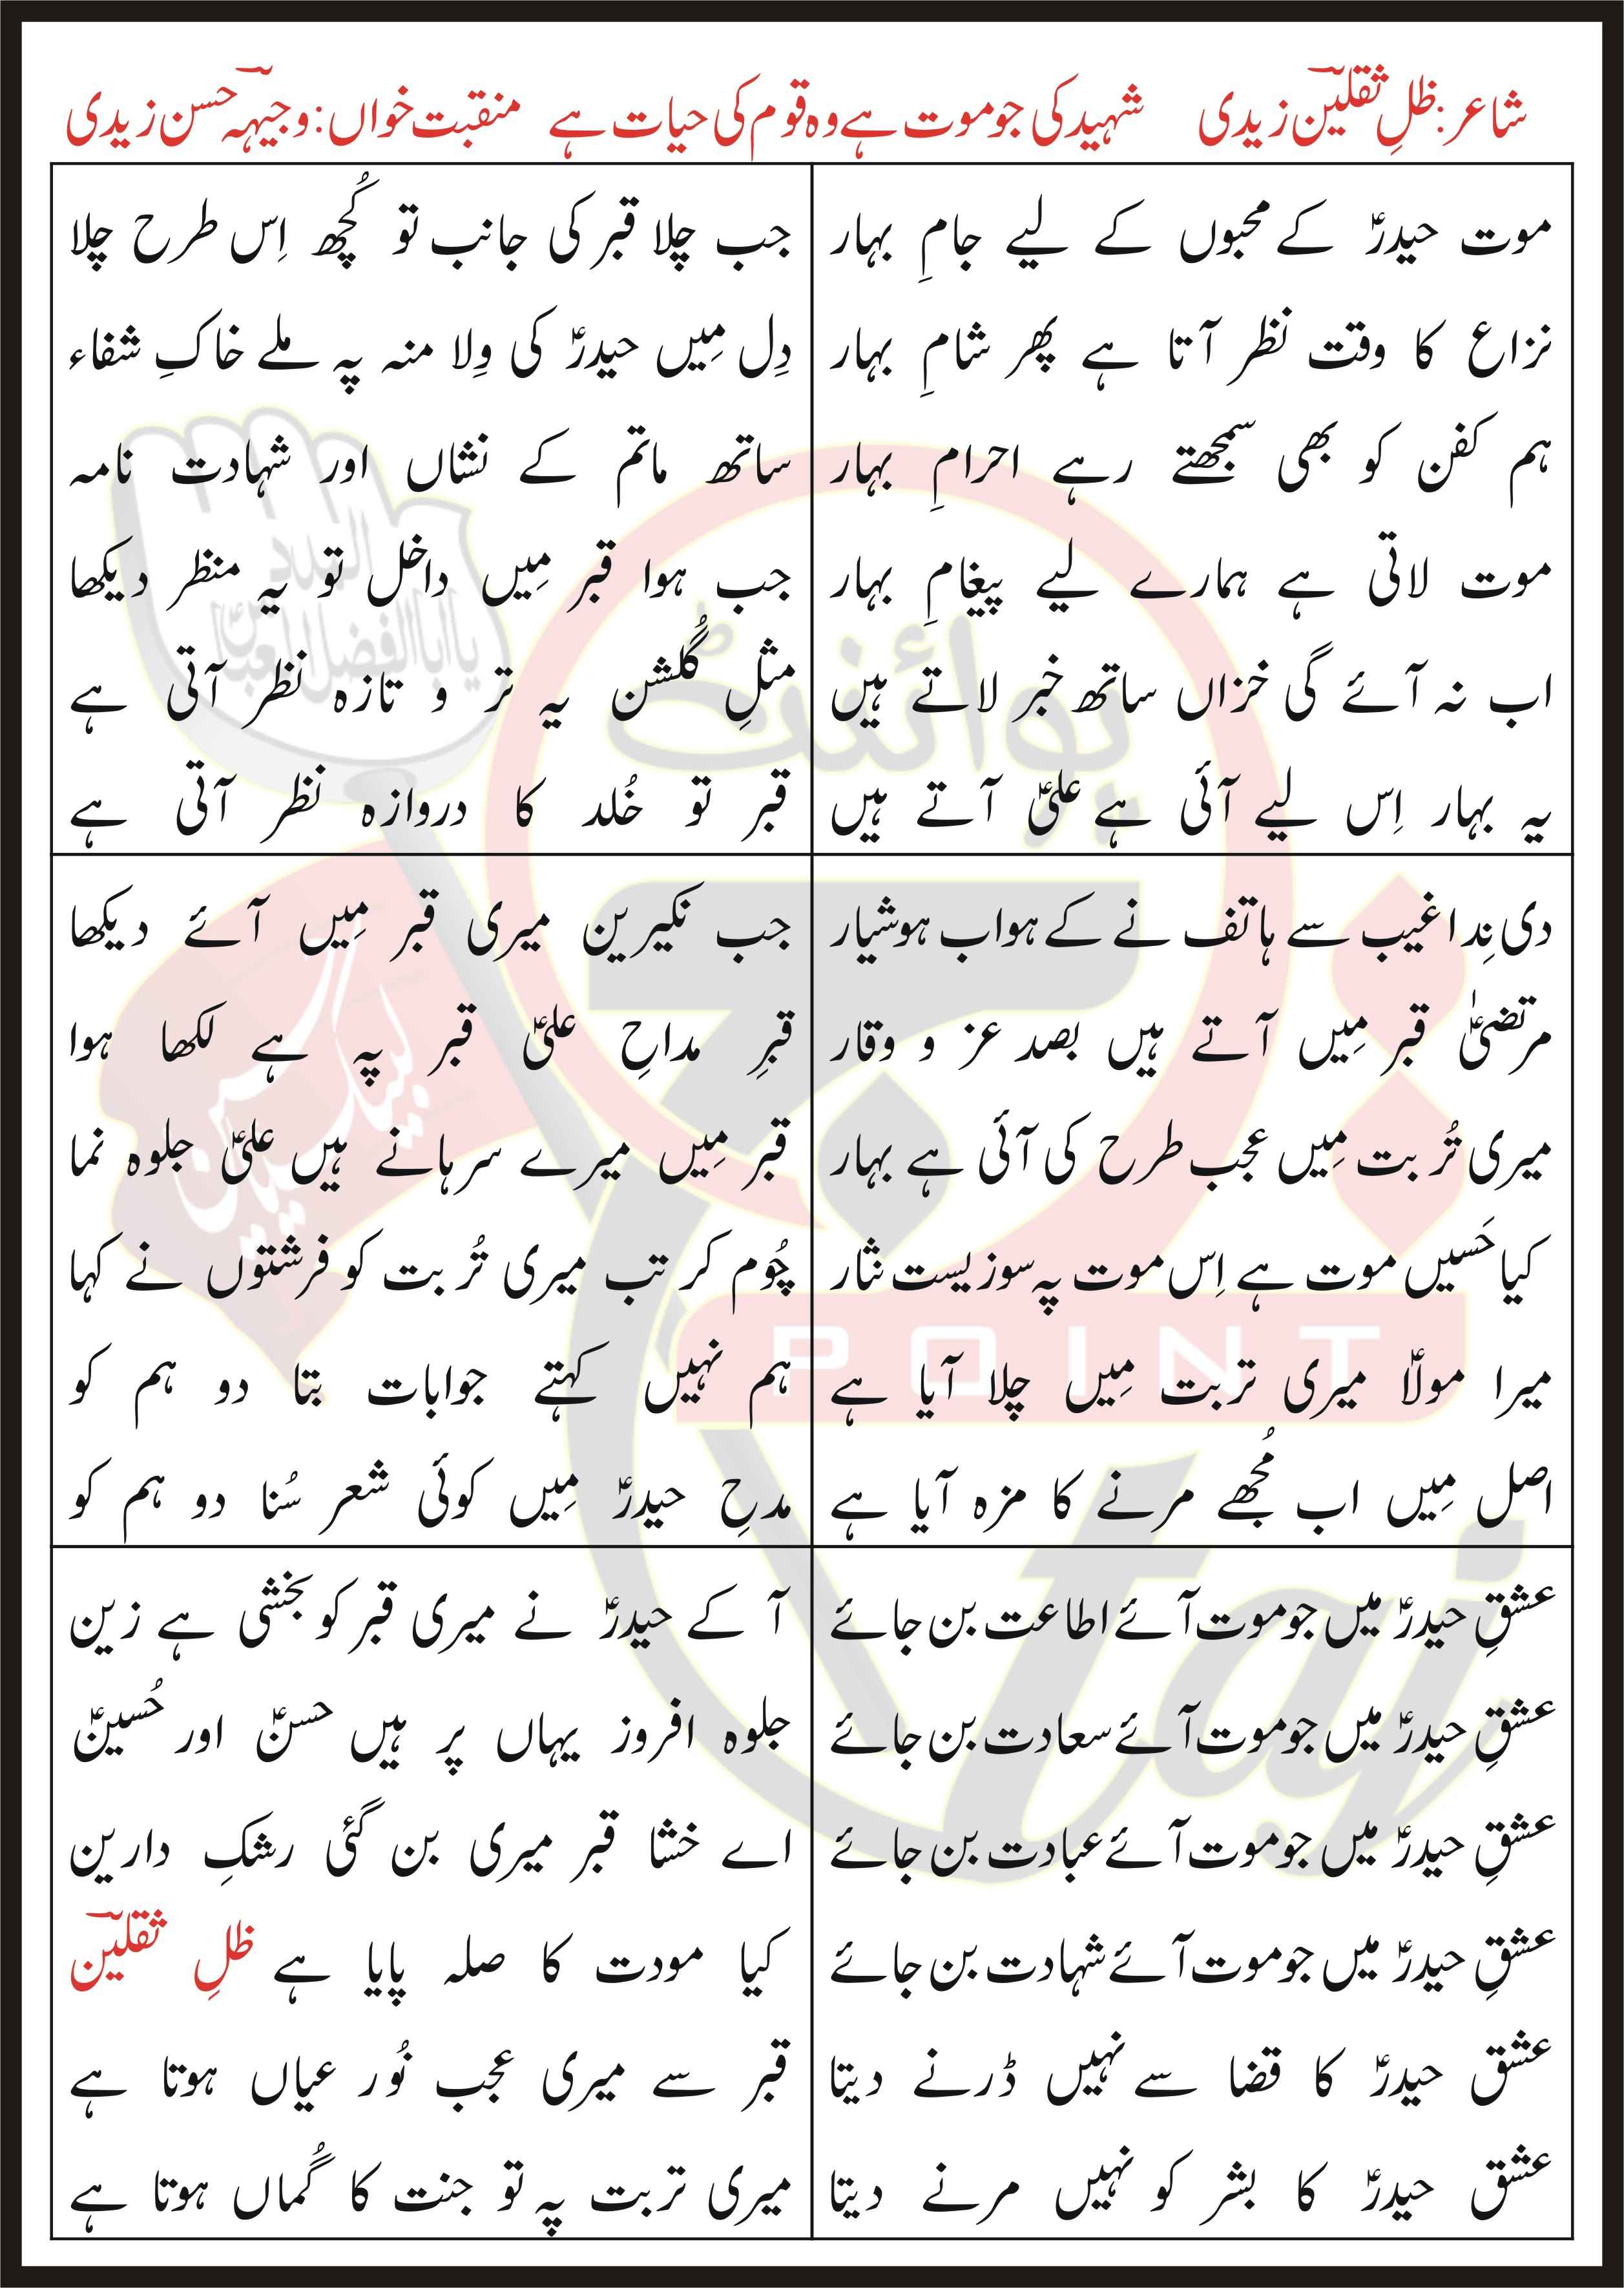 Shaheed Ki Jo Maut Hai Woh Qaum Ki Hayat Hai Lyrics In Urdu and Roman Urdu